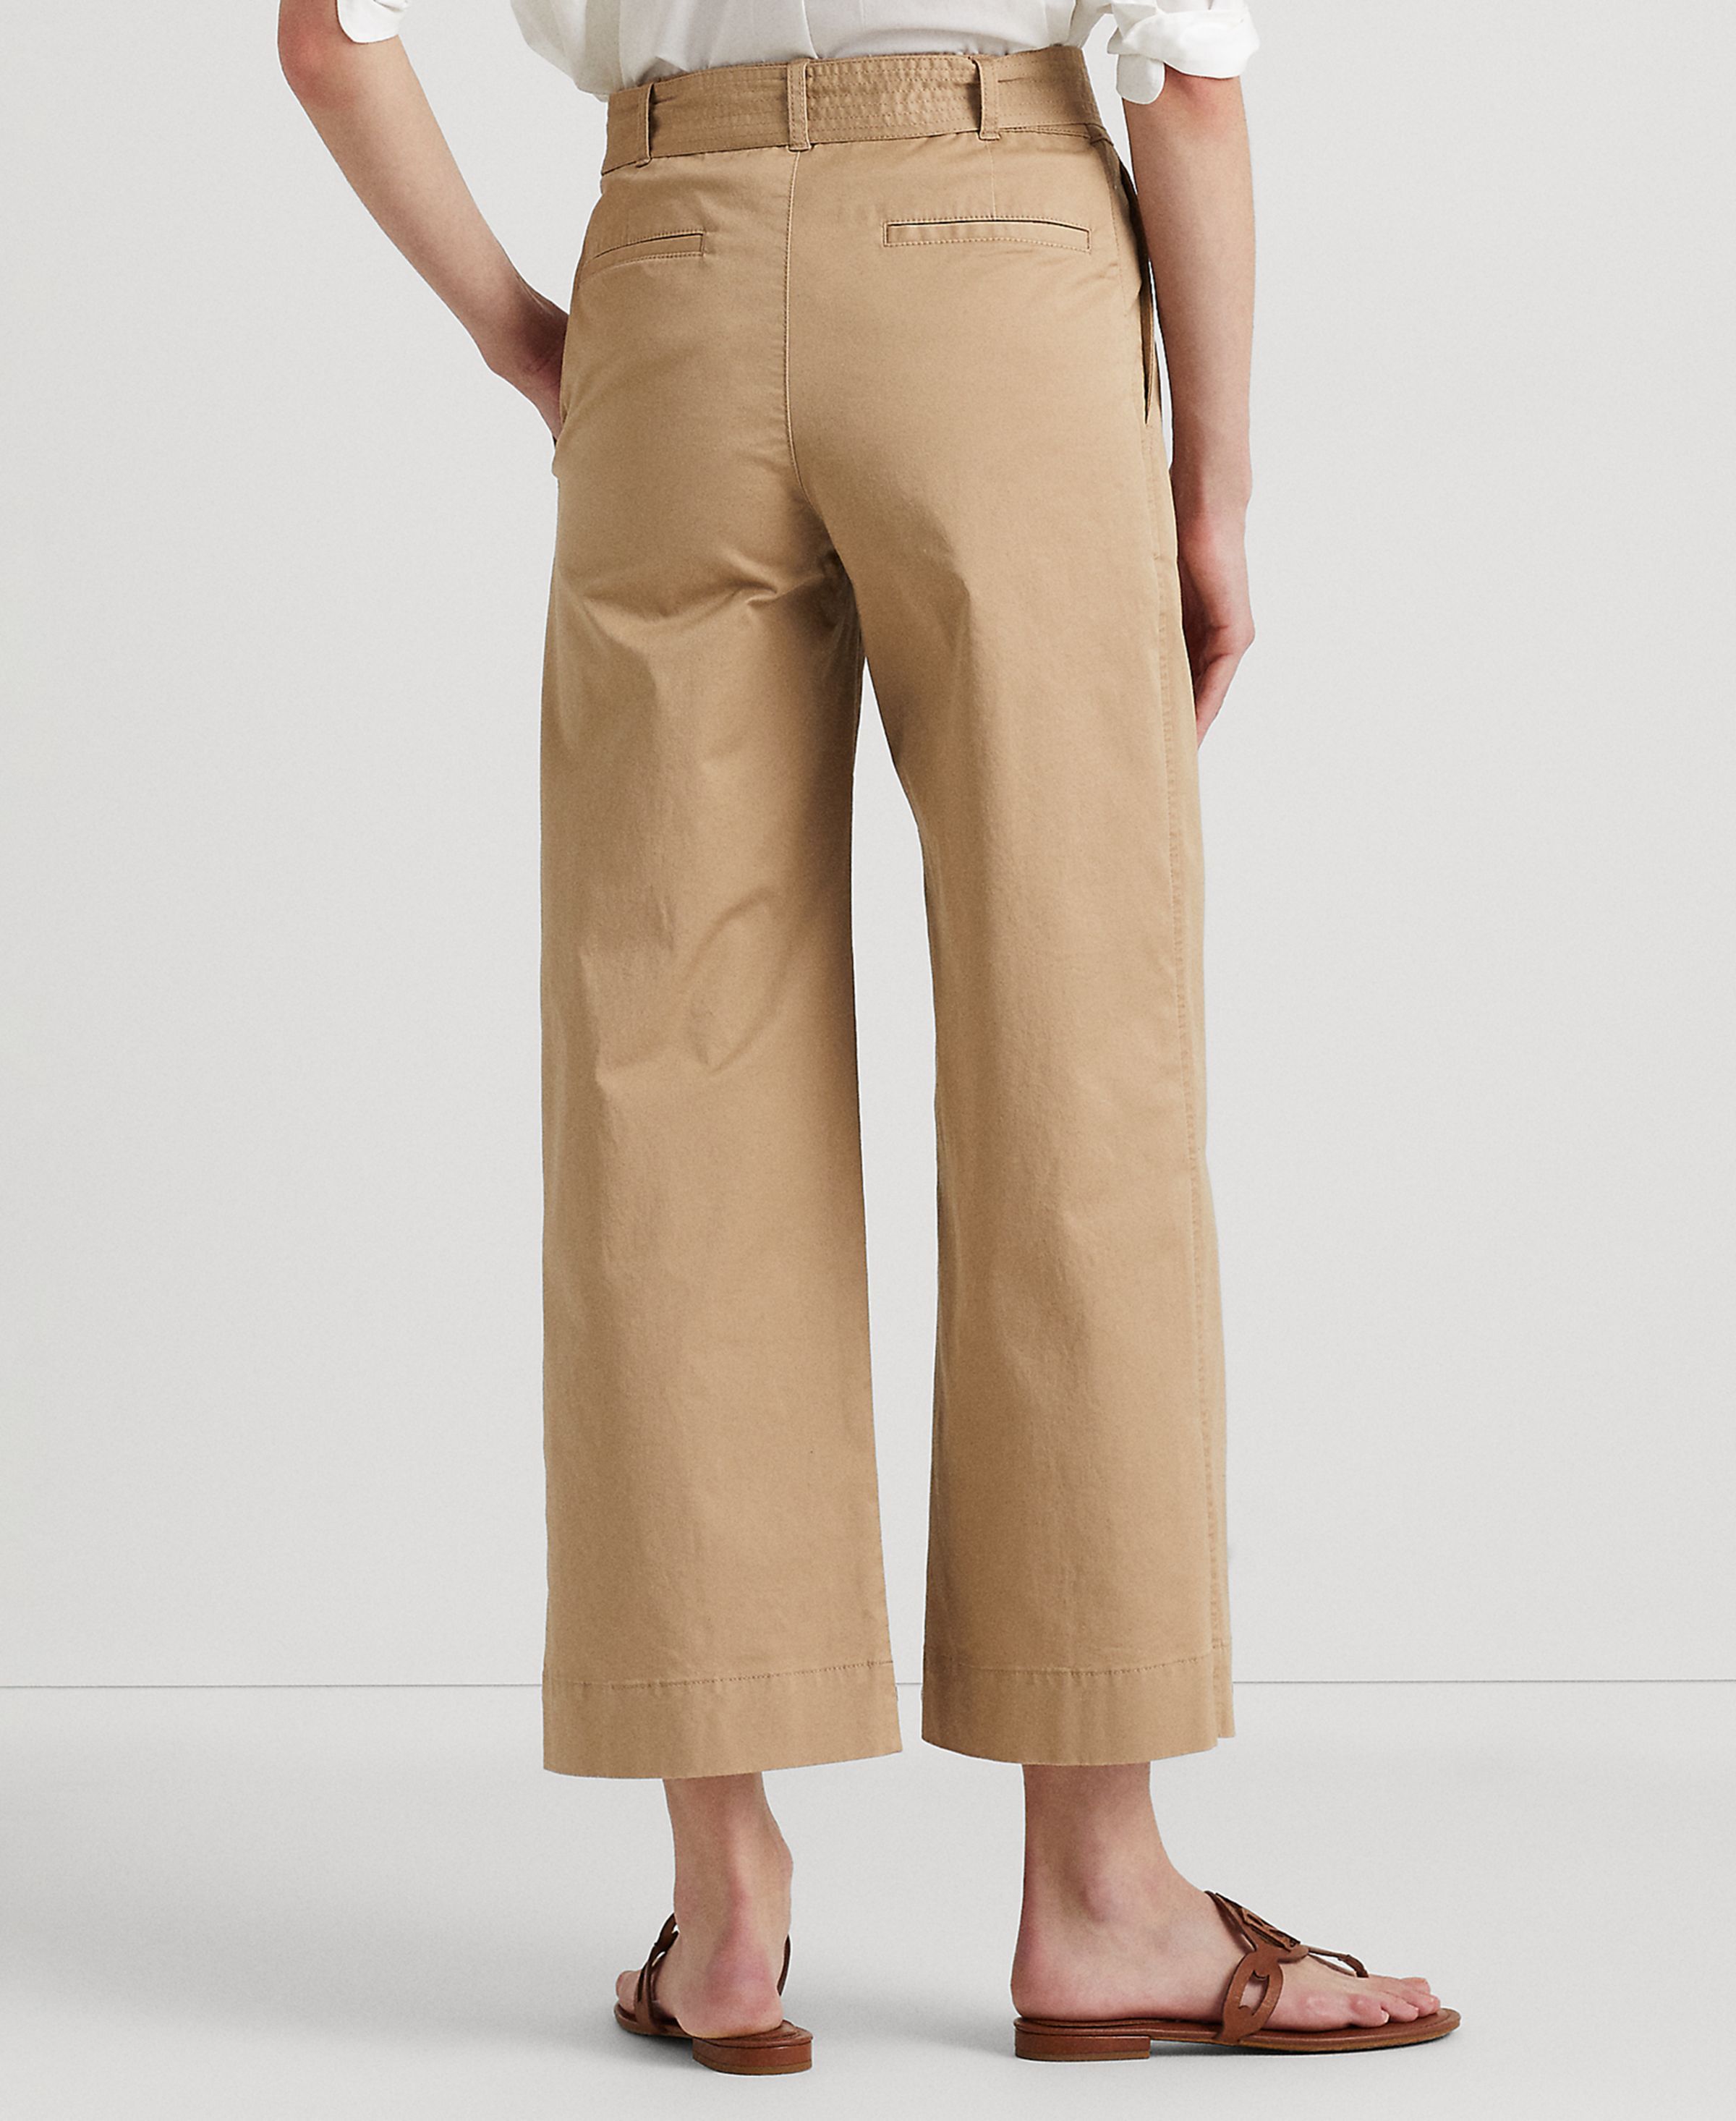 Lauren Ralph Lauren Women's Pants Sz 4 Micro-Sanded Twill Belted Wide-Leg Brown